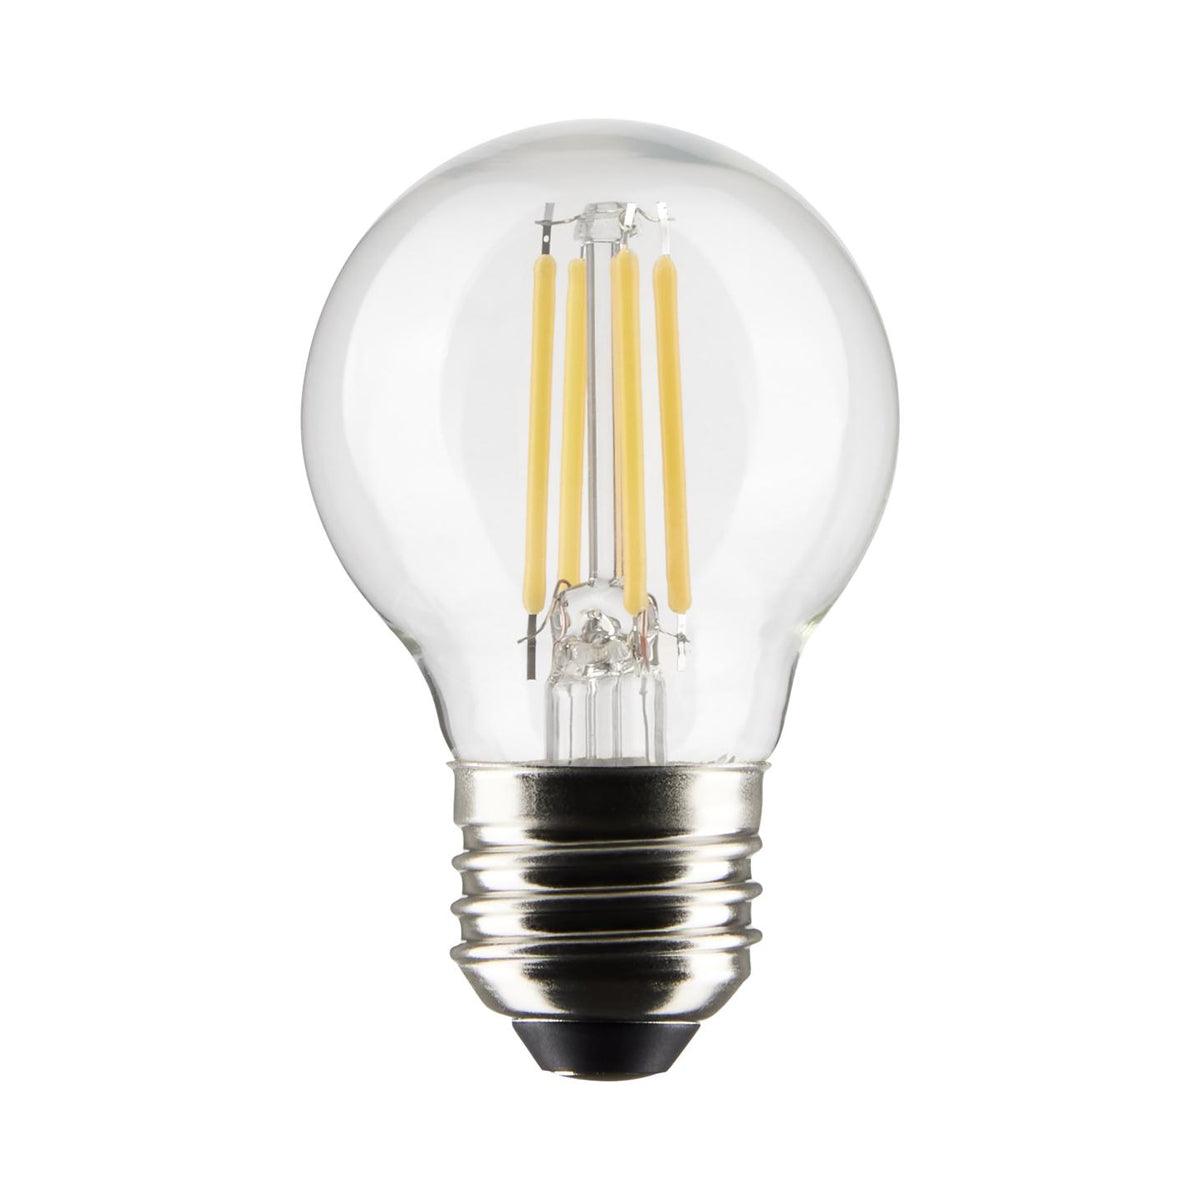 G16.5 LED Globe Bulb, 4 Watt, 350 Lumens, 2700K, E26 Medium Base, Clear Finish, Pack Of 2 - Bees Lighting